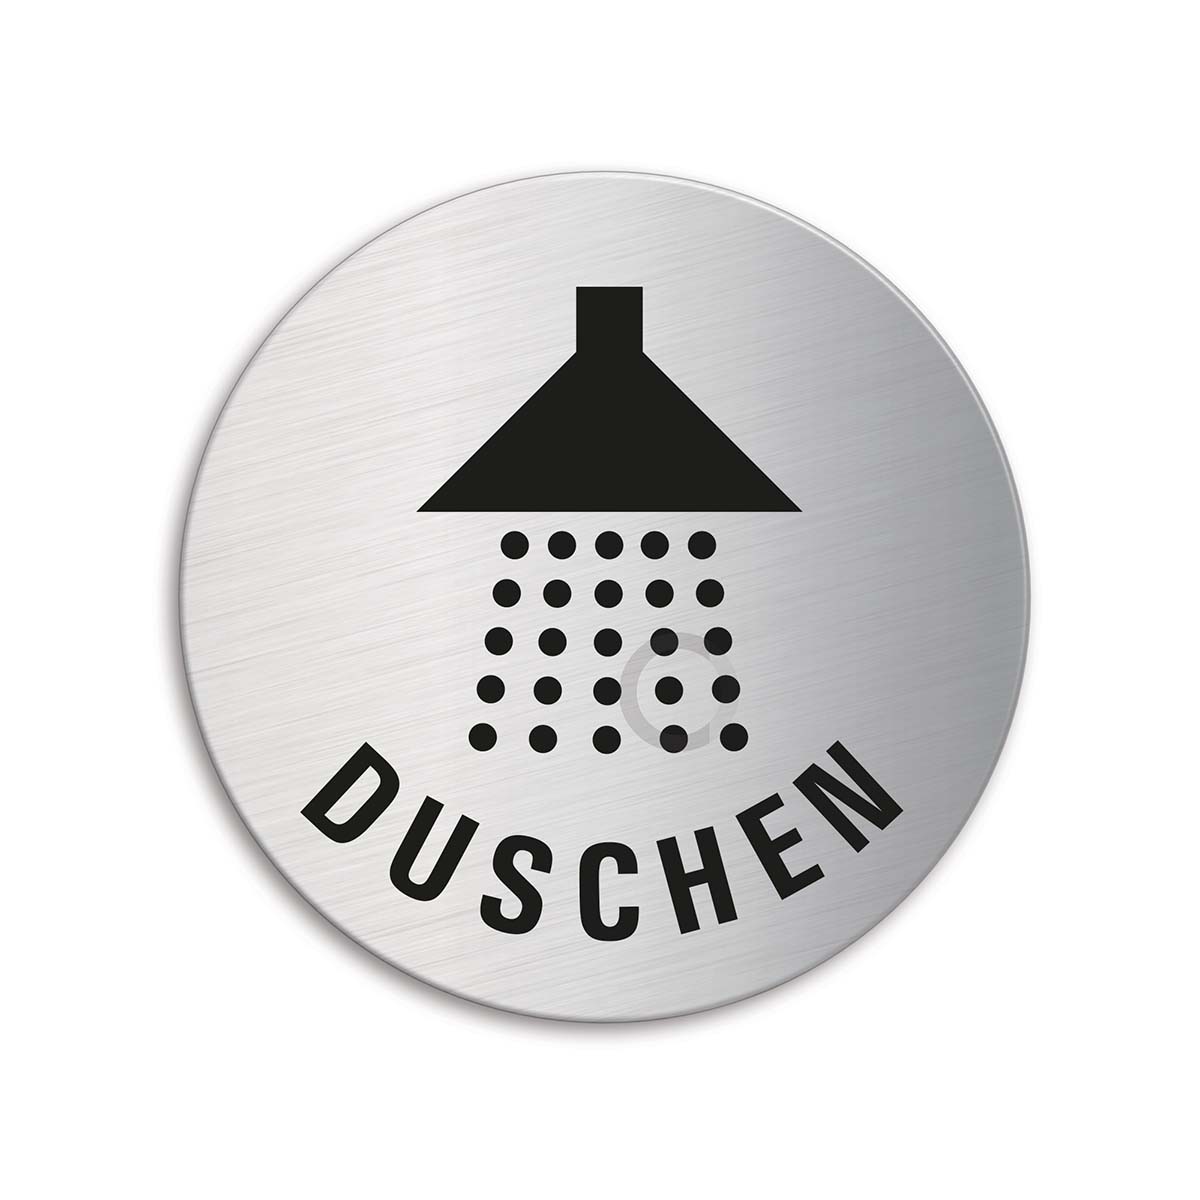 Dusche-Edelstahl-Schild-75 mm Ø-Duschraum-Toilette-WC-Klo-Warnschild-Hinweis 